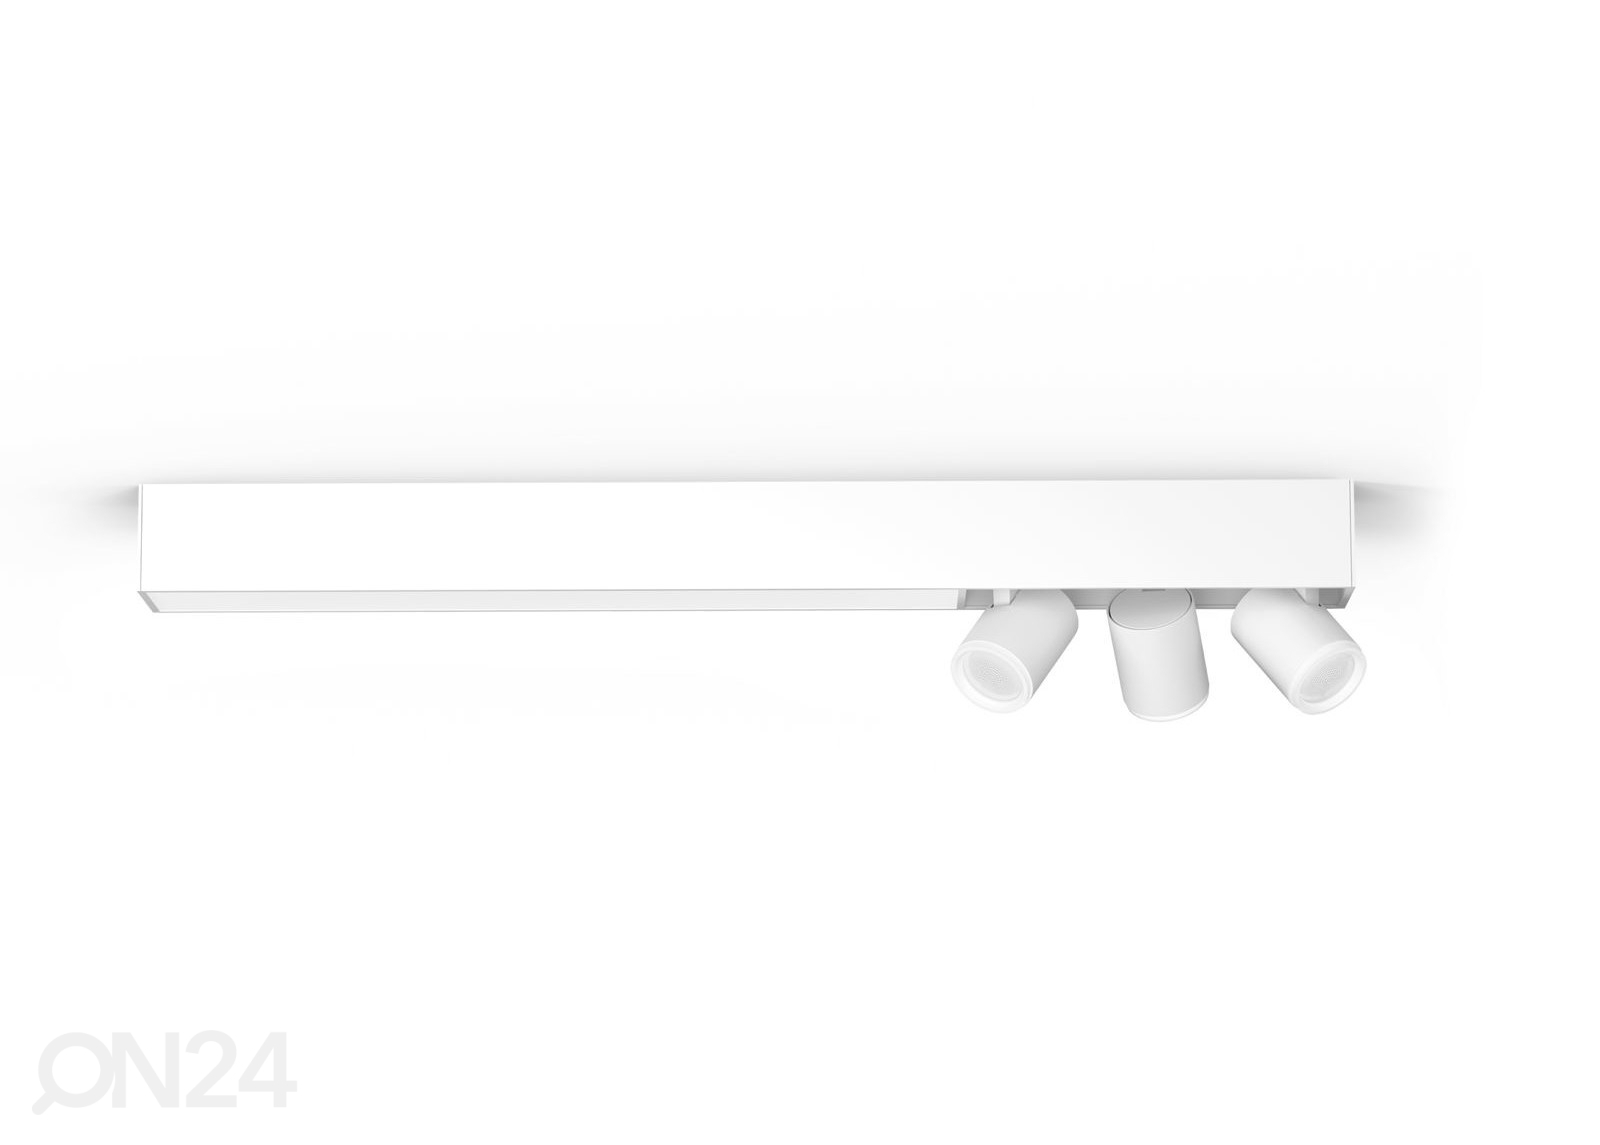 Hue White and Color ambiance Centris умный белый точечный светильник 3L увеличить